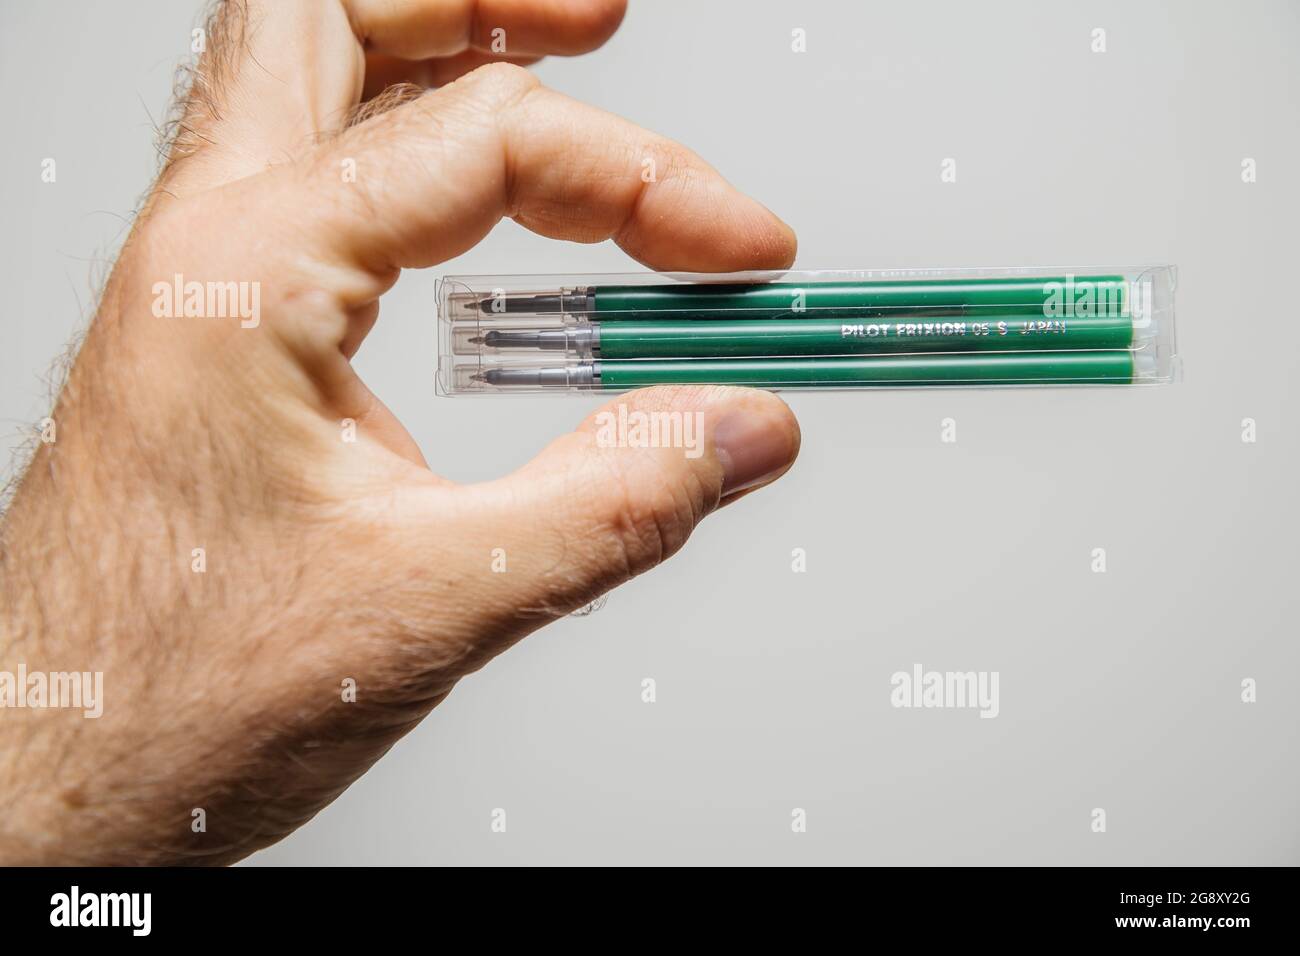 L'inchiostro della penna cancellabile Pilot Frixion si ricarica di colore  verde Foto stock - Alamy